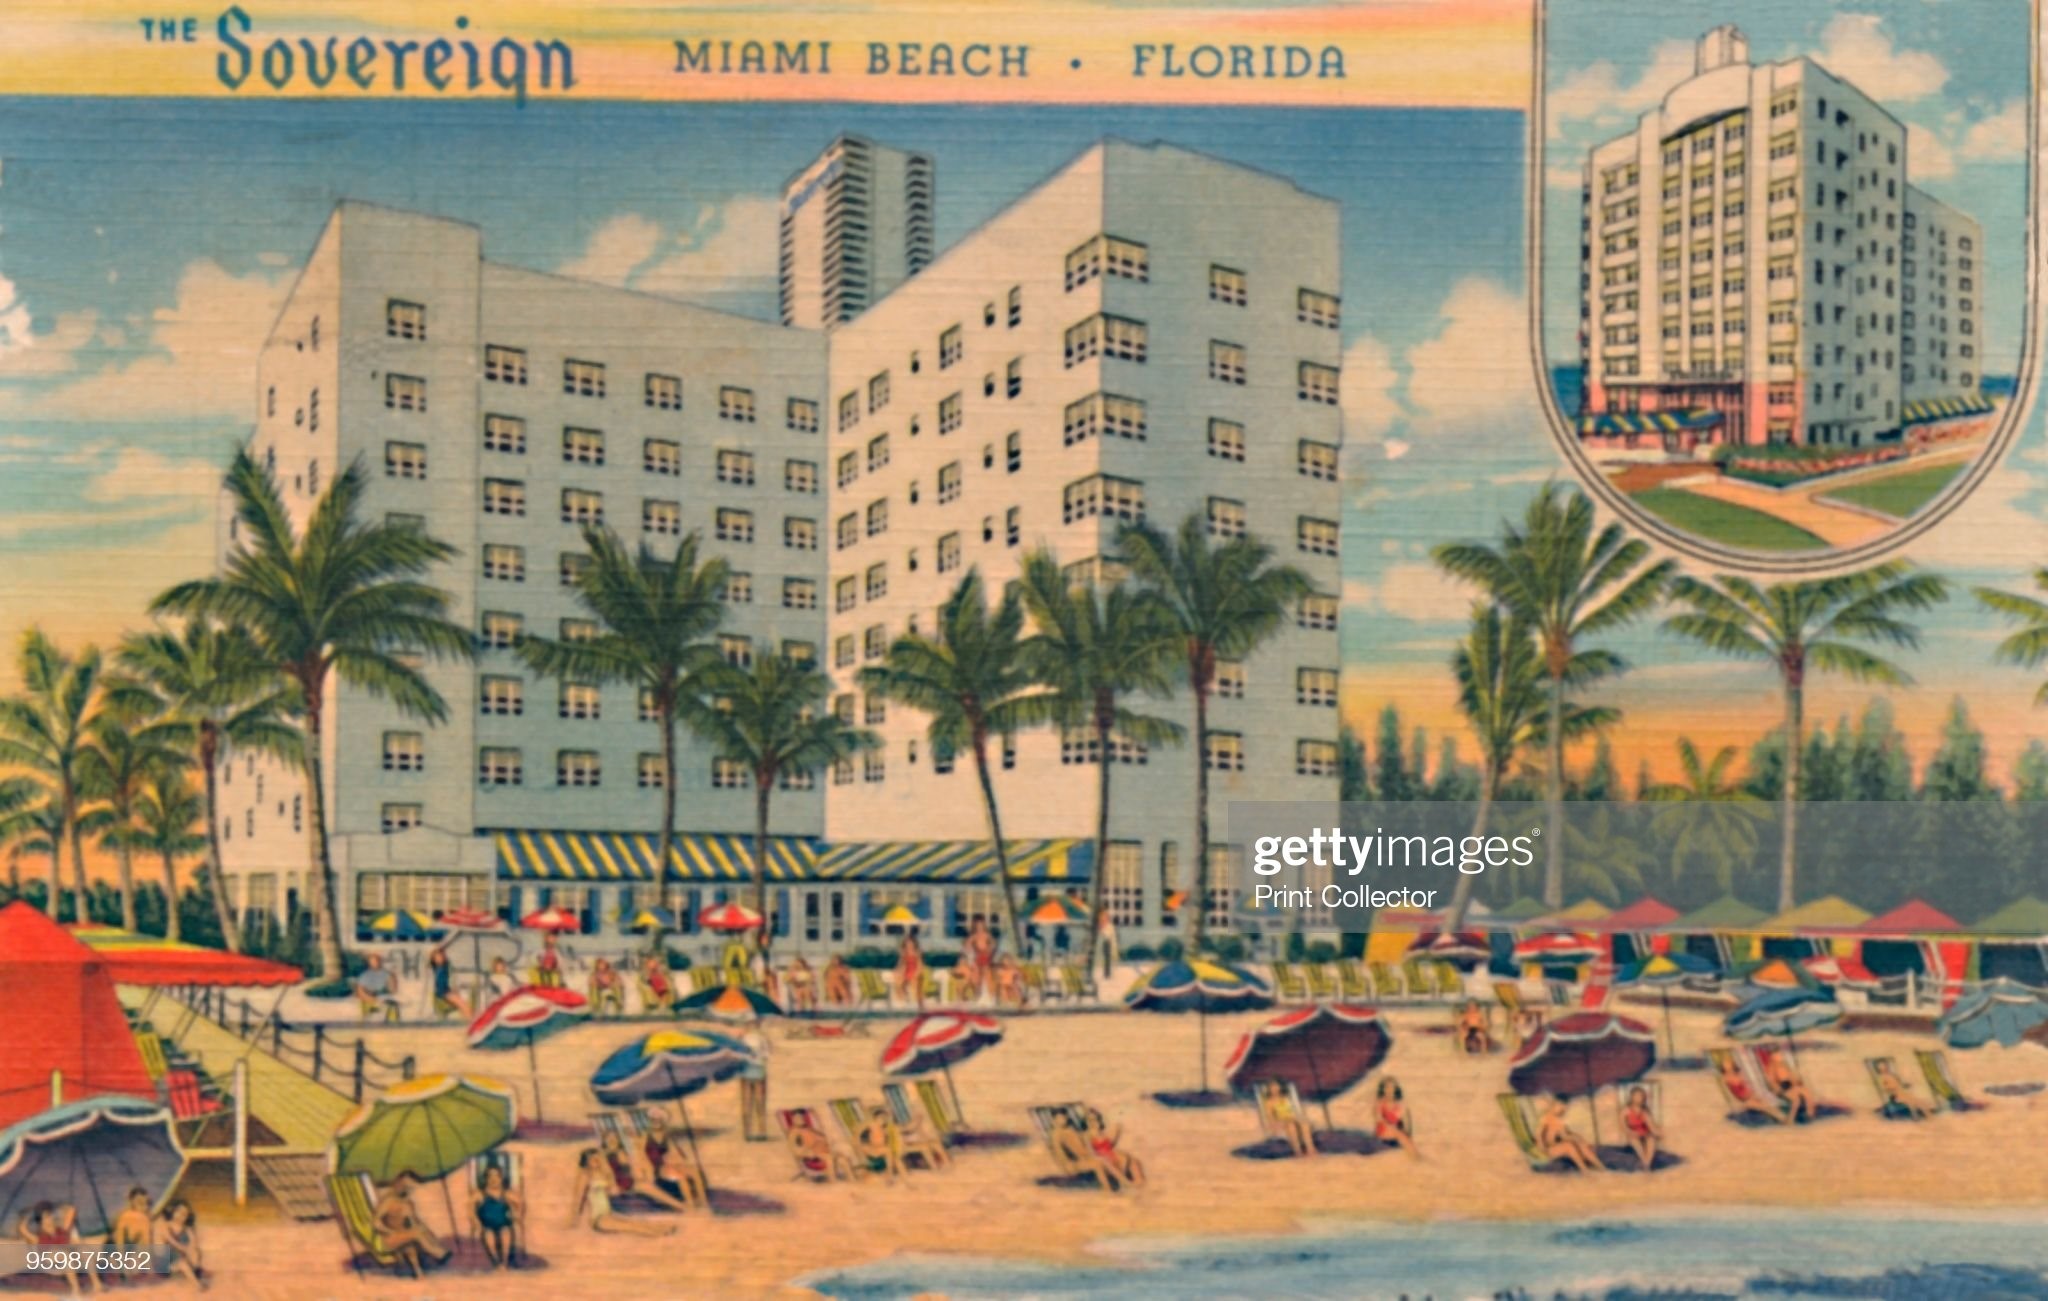 The Sovereign, Miami Beach, Florida, circa 1940s. 